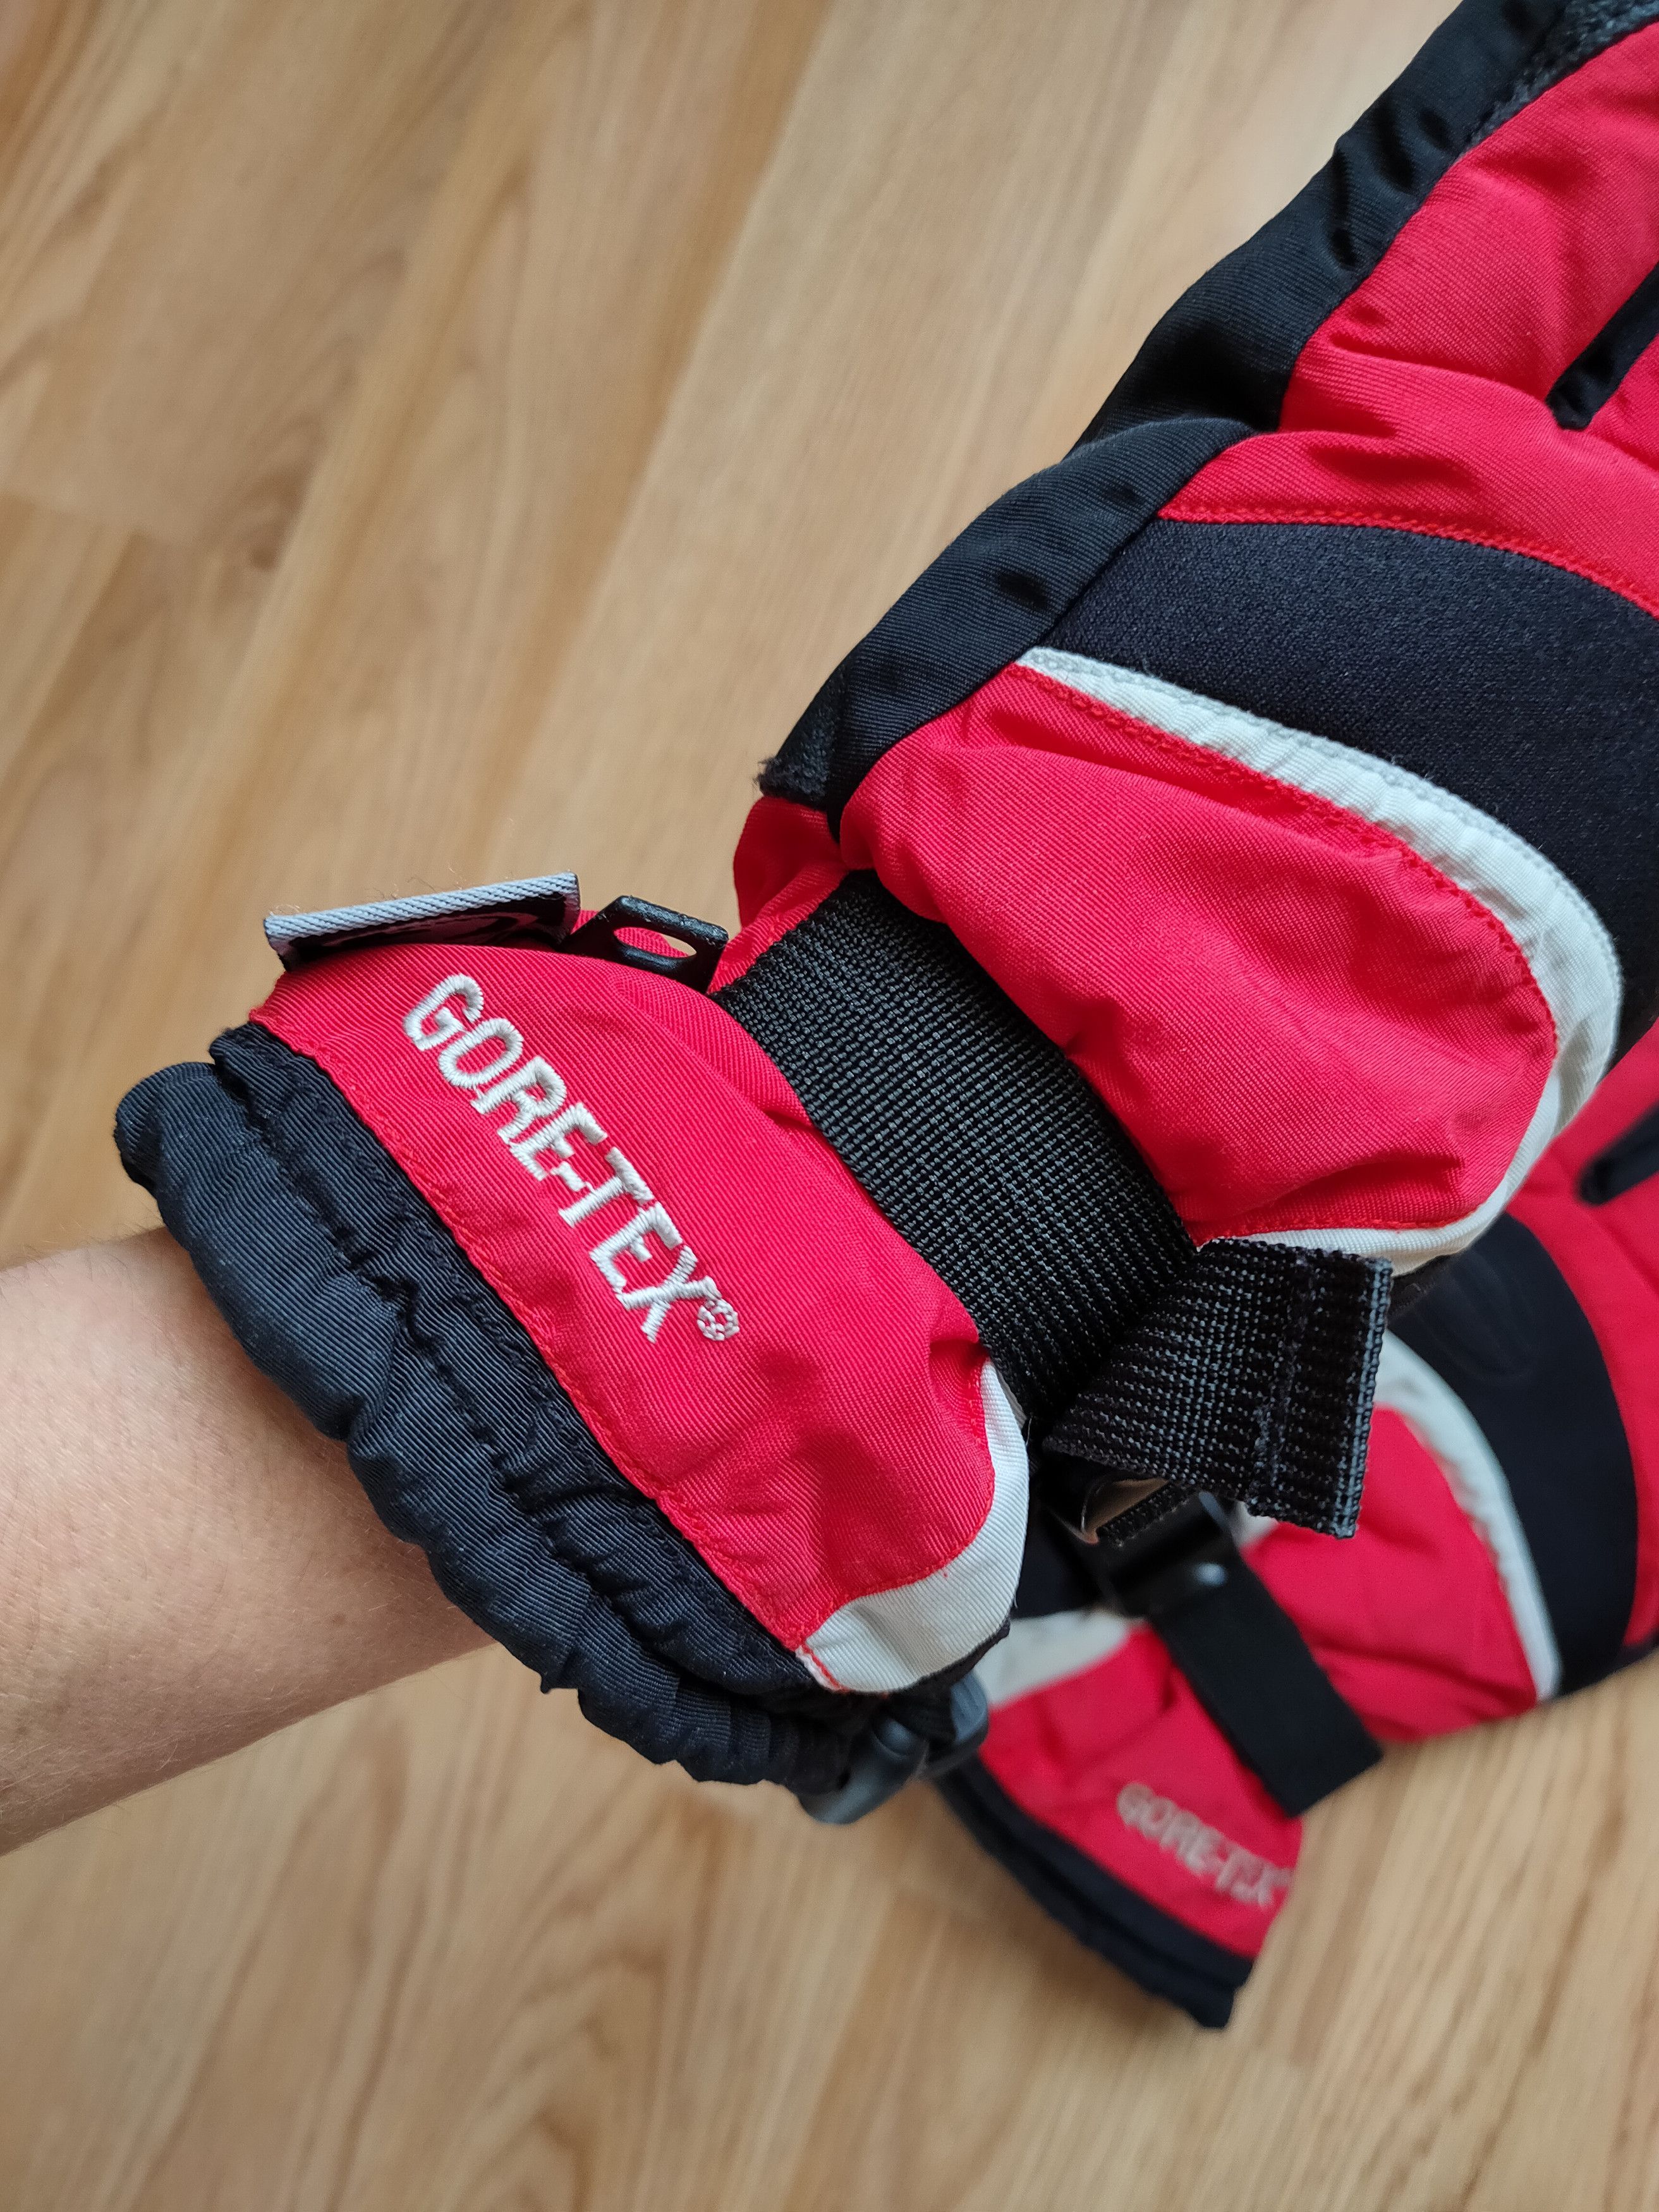 Ski Vintage Ziener Goretex Gloves Gorpcore Outdoor Ski Gloves Size ONE SIZE - 10 Thumbnail